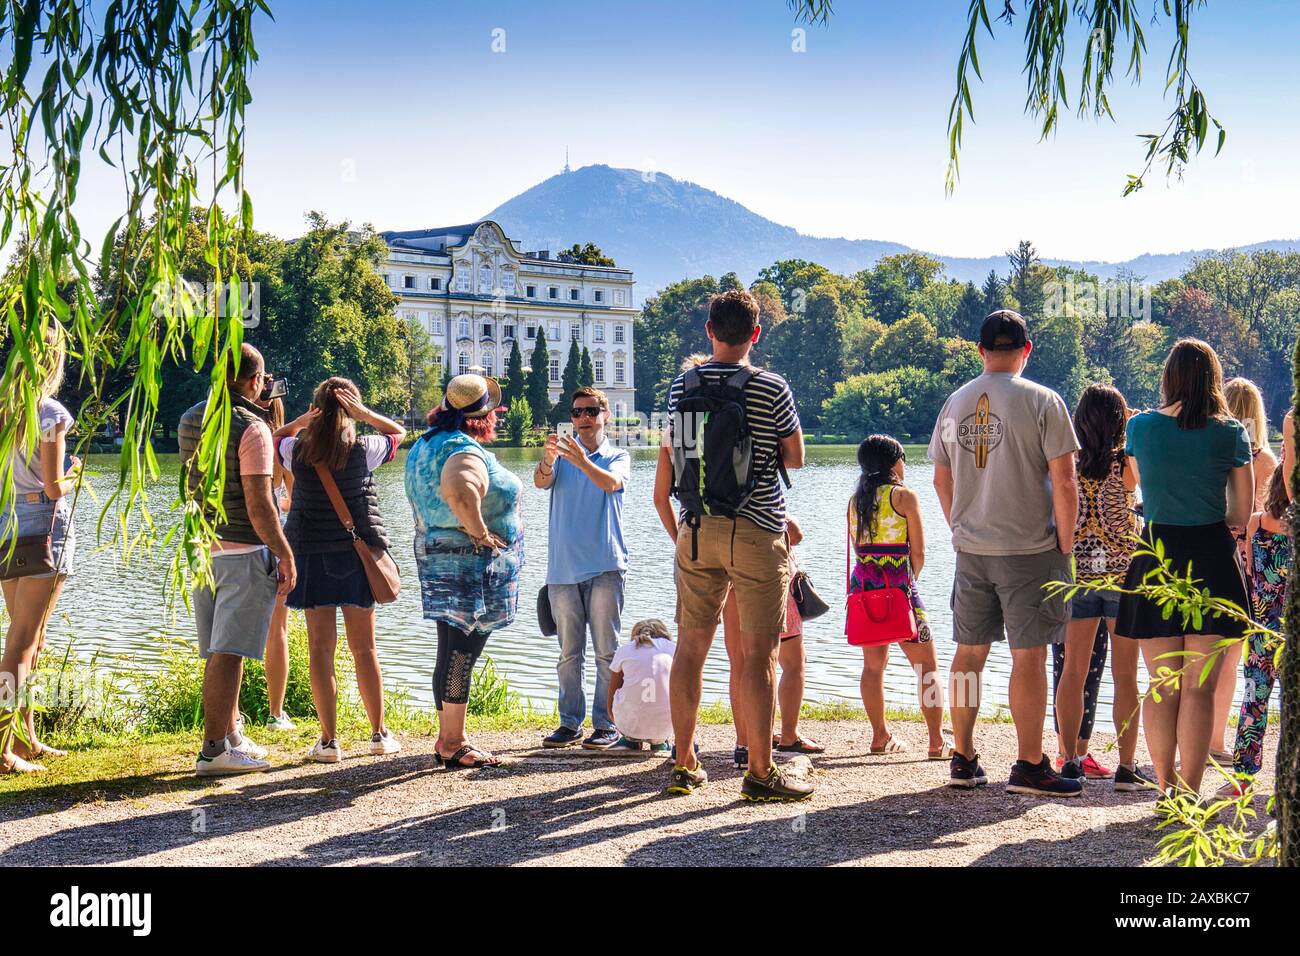 Touristen auf der Sound Of Music Tour. Blick über den Lake Leopoldskron zum Schloss Leopoldskron, wo die berühmte Bootsszene gedreht wurde. Salzburg, Österreich Stockfoto